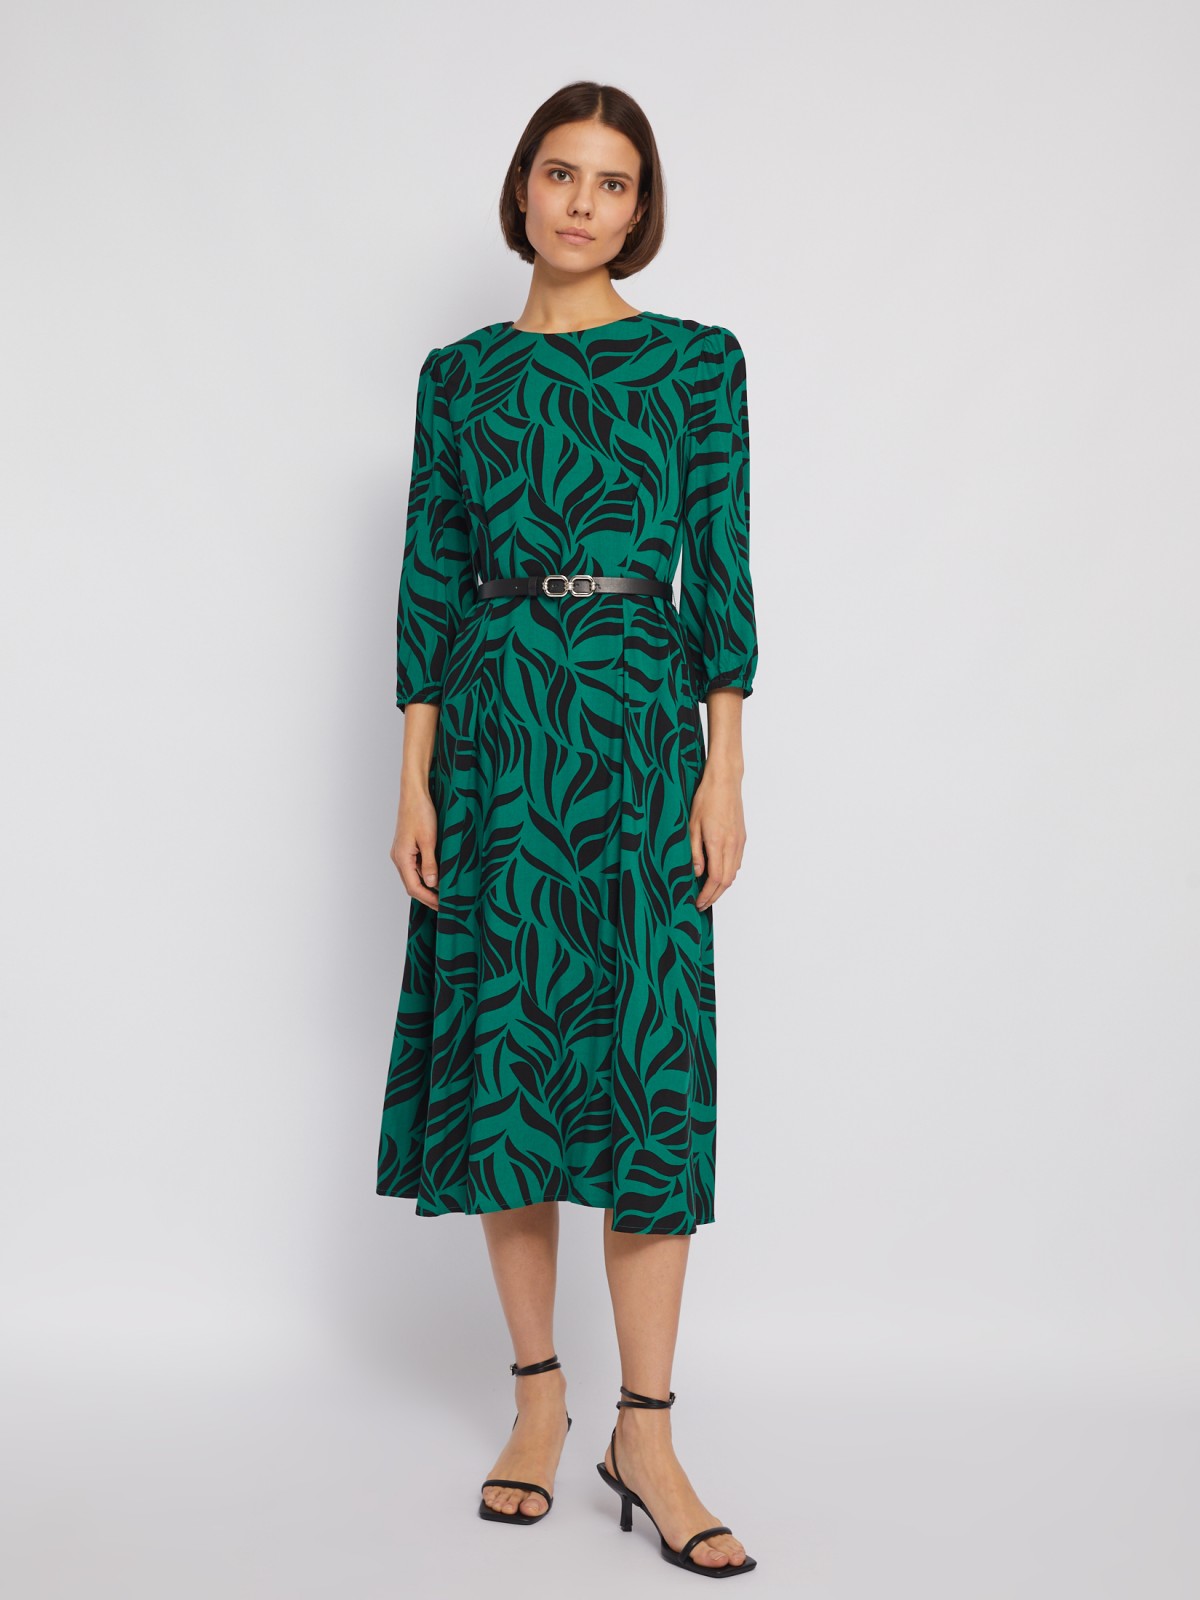 Платье длины миди из вискозы с принтом и ремнём на талию zolla 024128262132, цвет зеленый, размер S - фото 2